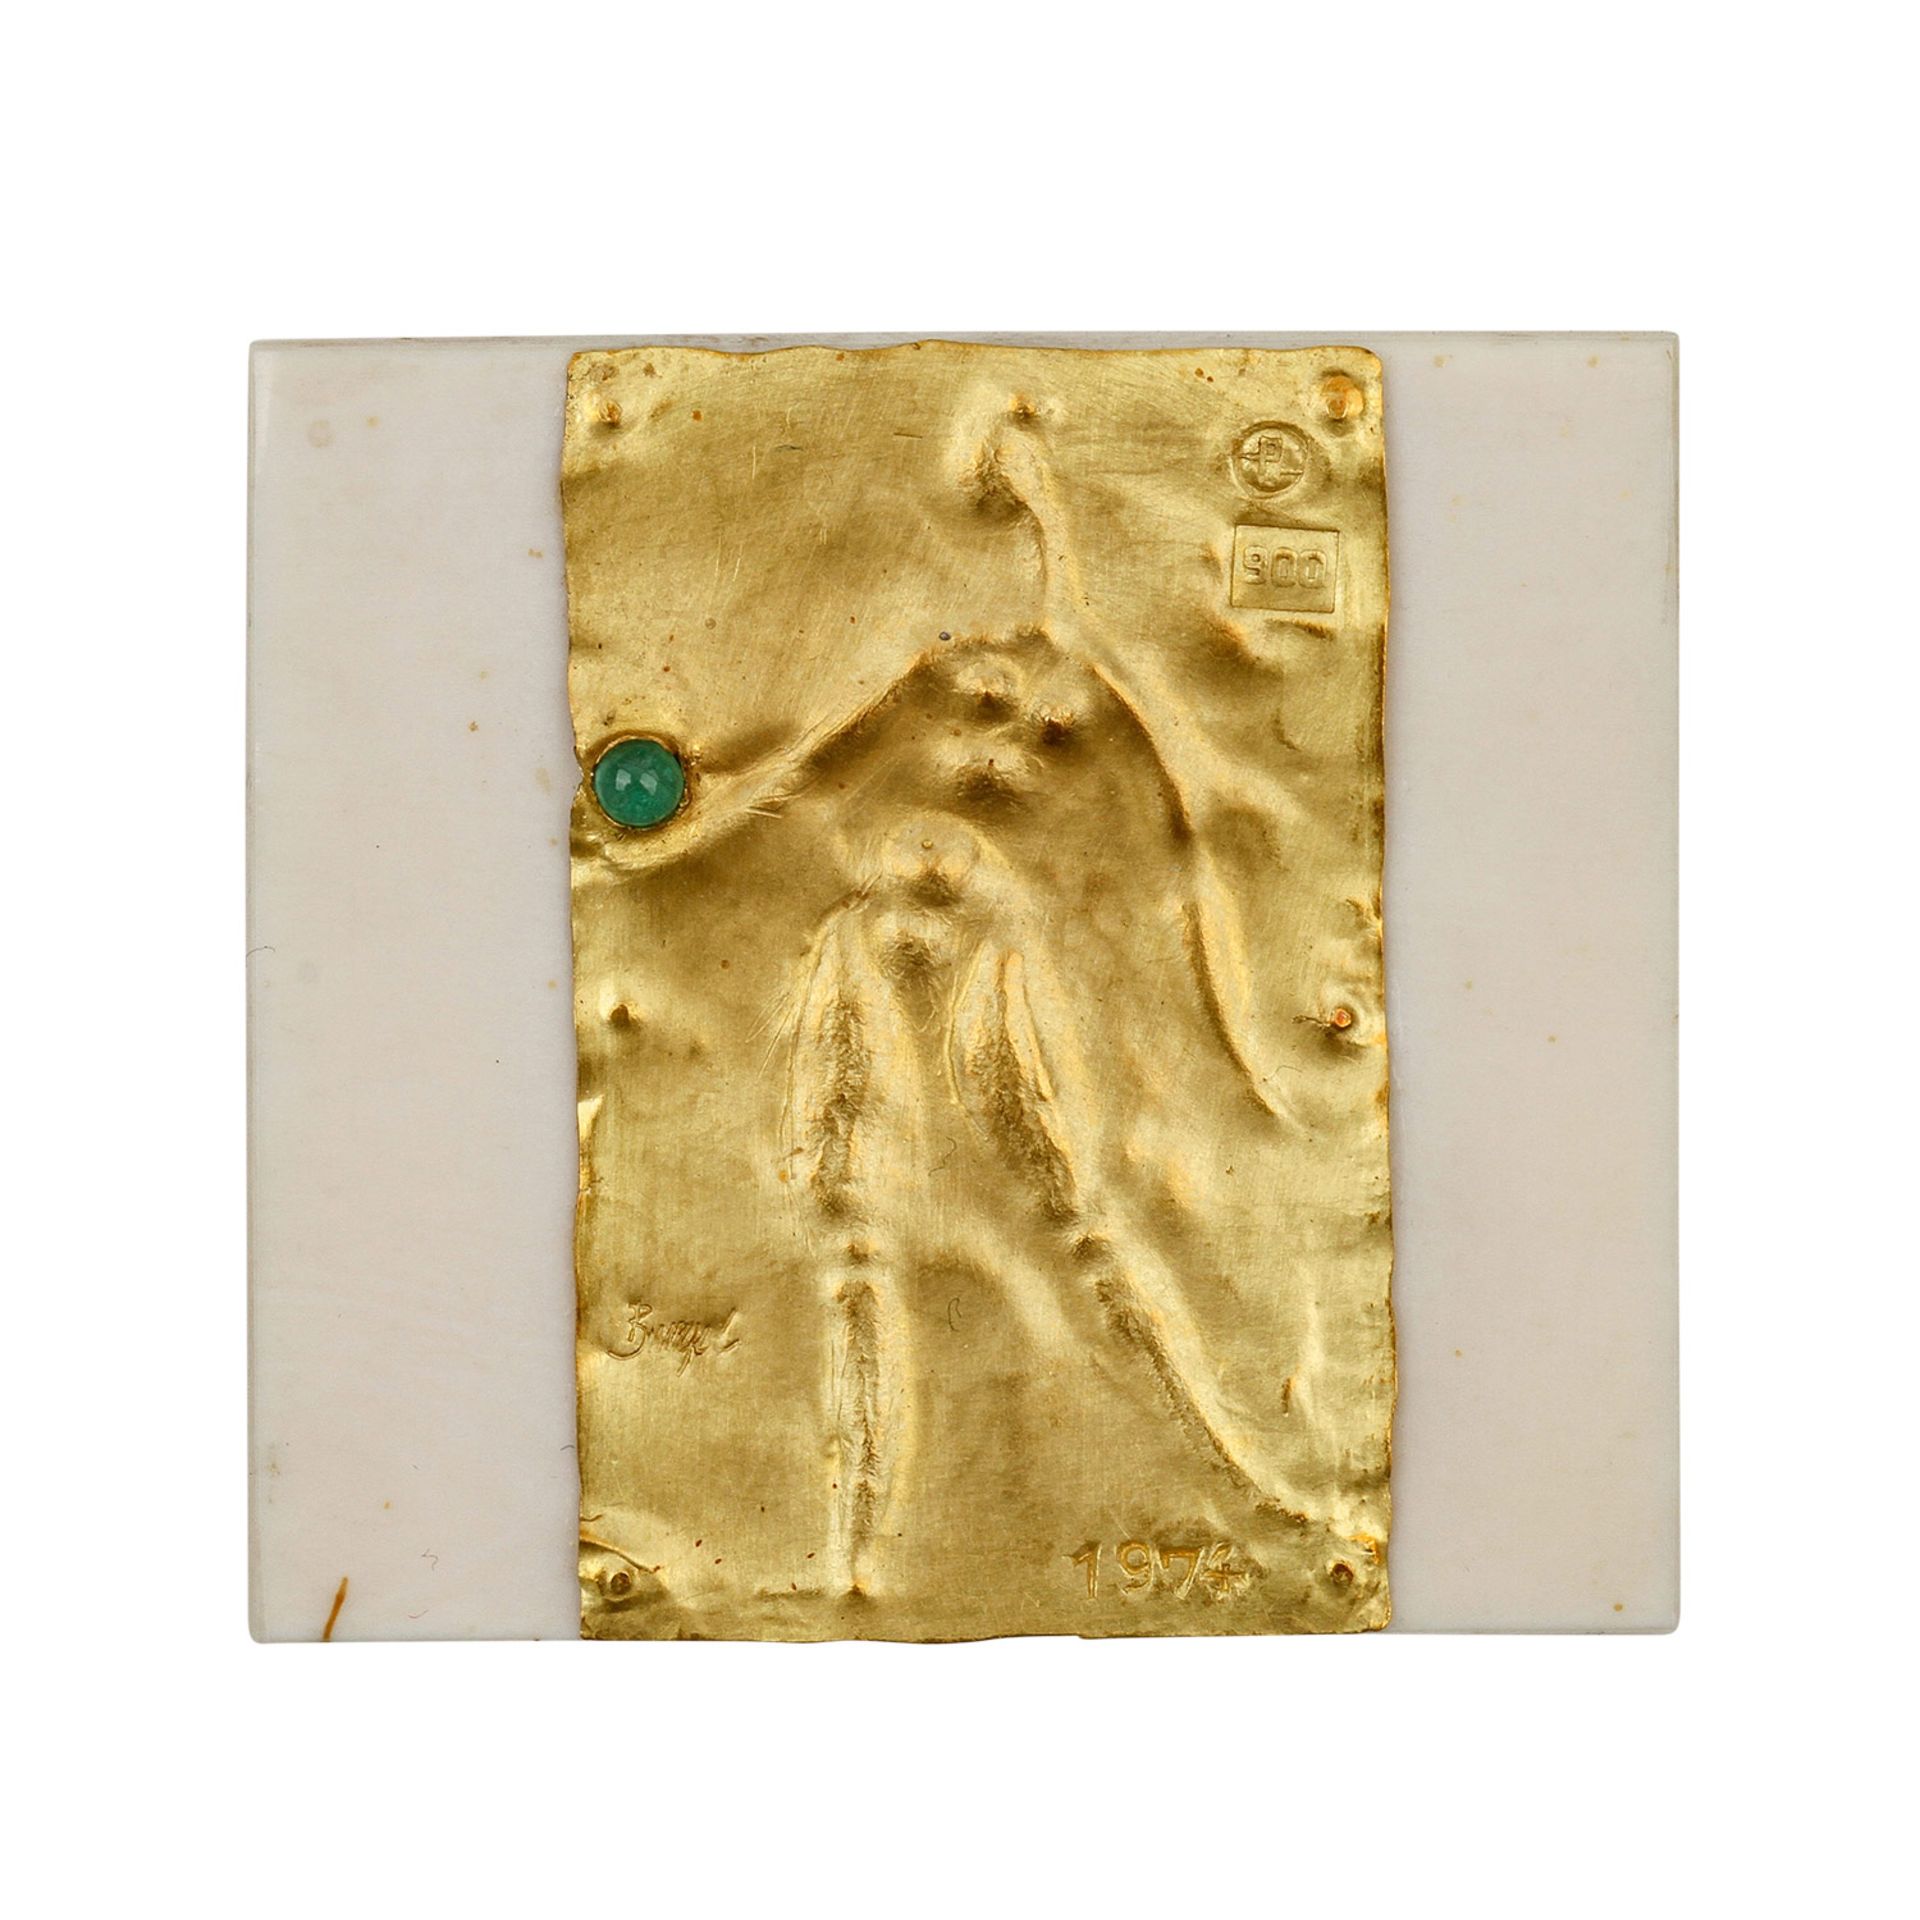 Goldminiatur "Frauenakt" (1974) von E. BURGEL,Gold 900, mit 1 Smaragd, getrieben + ziseliert, auf - Bild 2 aus 6